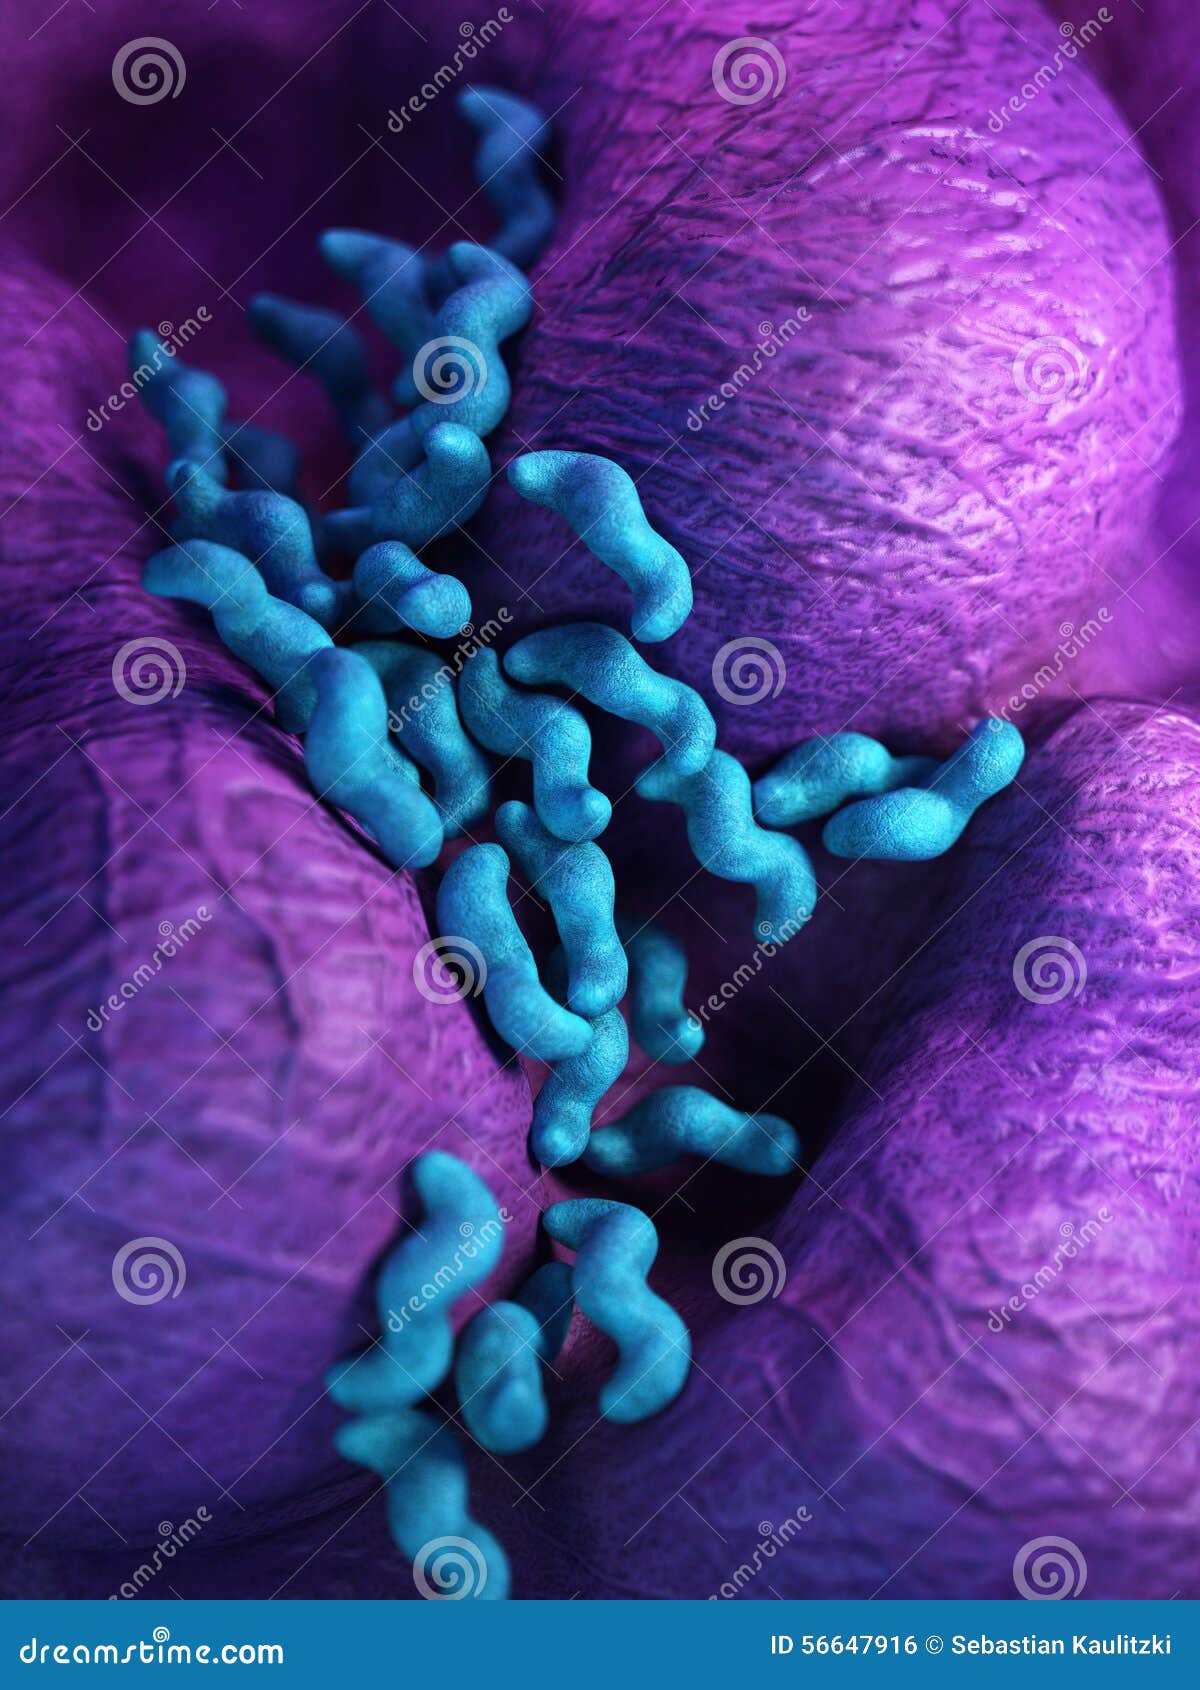 the campylobacter - close up